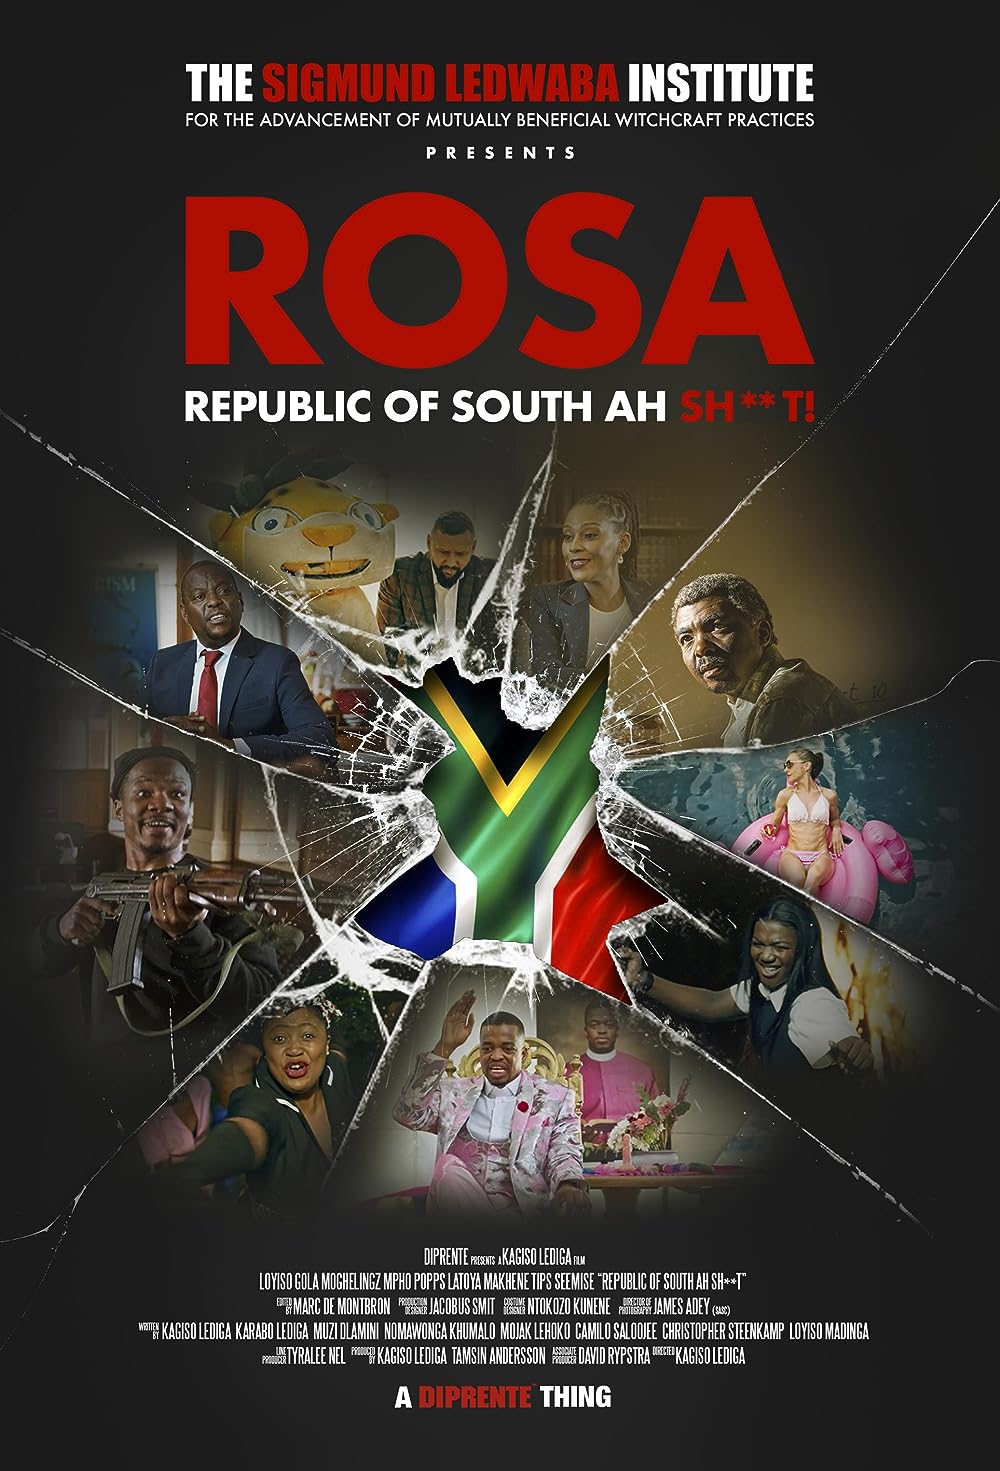     ROSA: Republic of South Ah Sh**t!